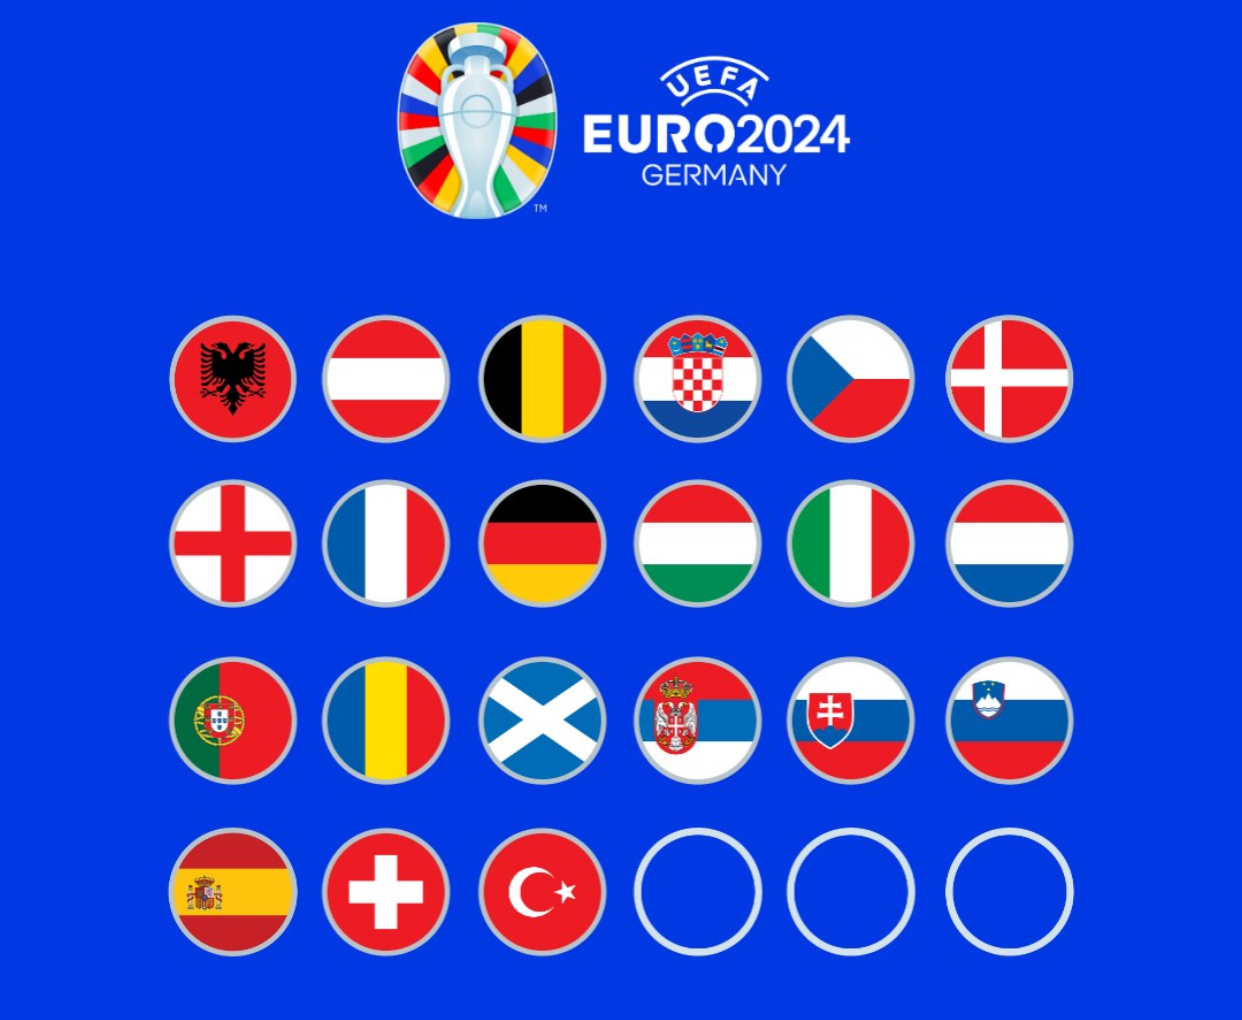 Tragerea la sorți pentru Euro 2024. Detalii legate de marele eveniment UEFA